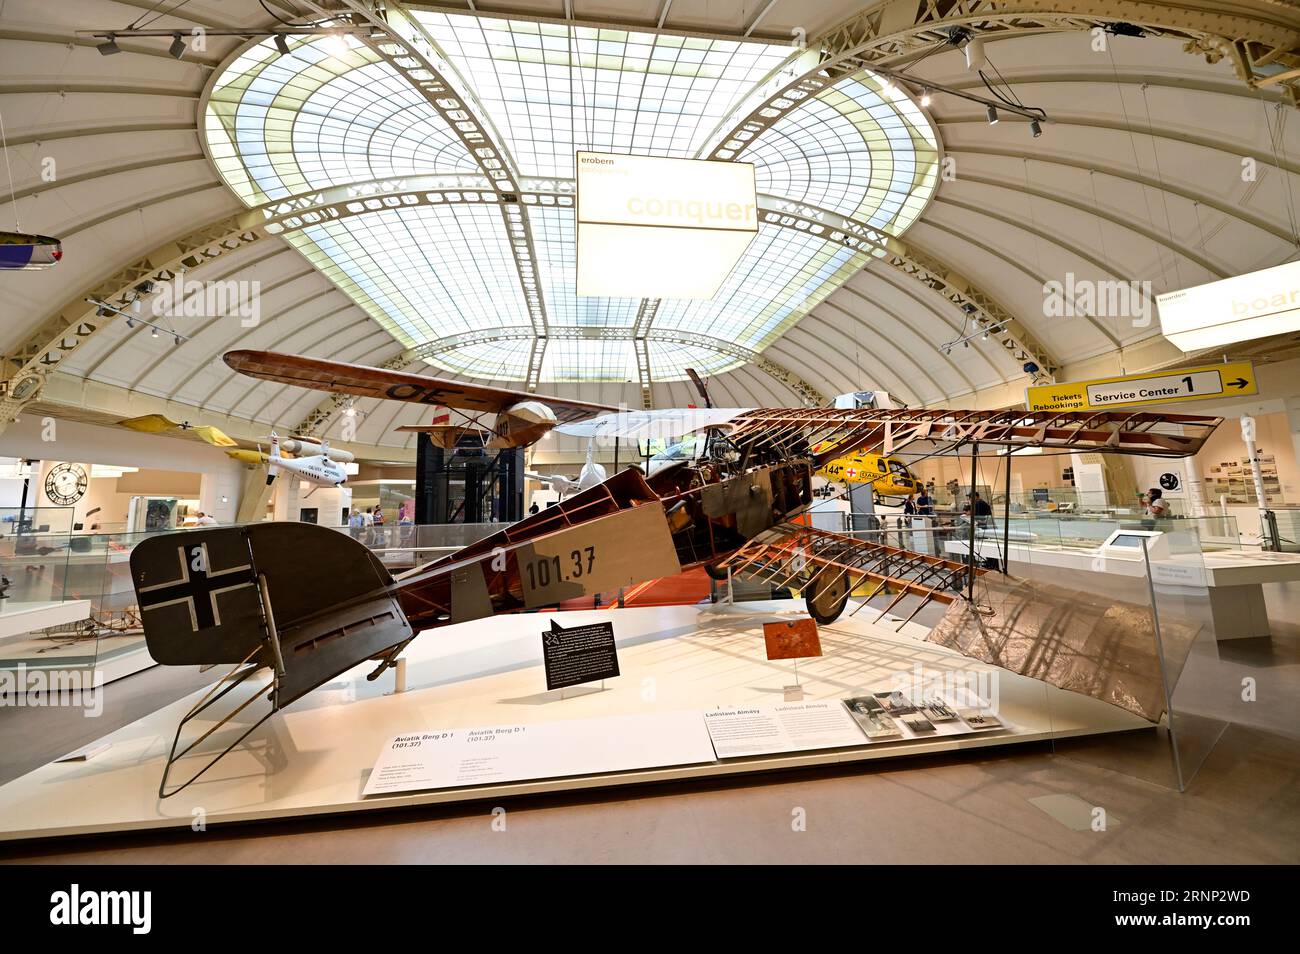 Vienna, Austria. Aviatik Berg D 1 aereo da combattimento nel Museo tecnico di Vienna Foto Stock